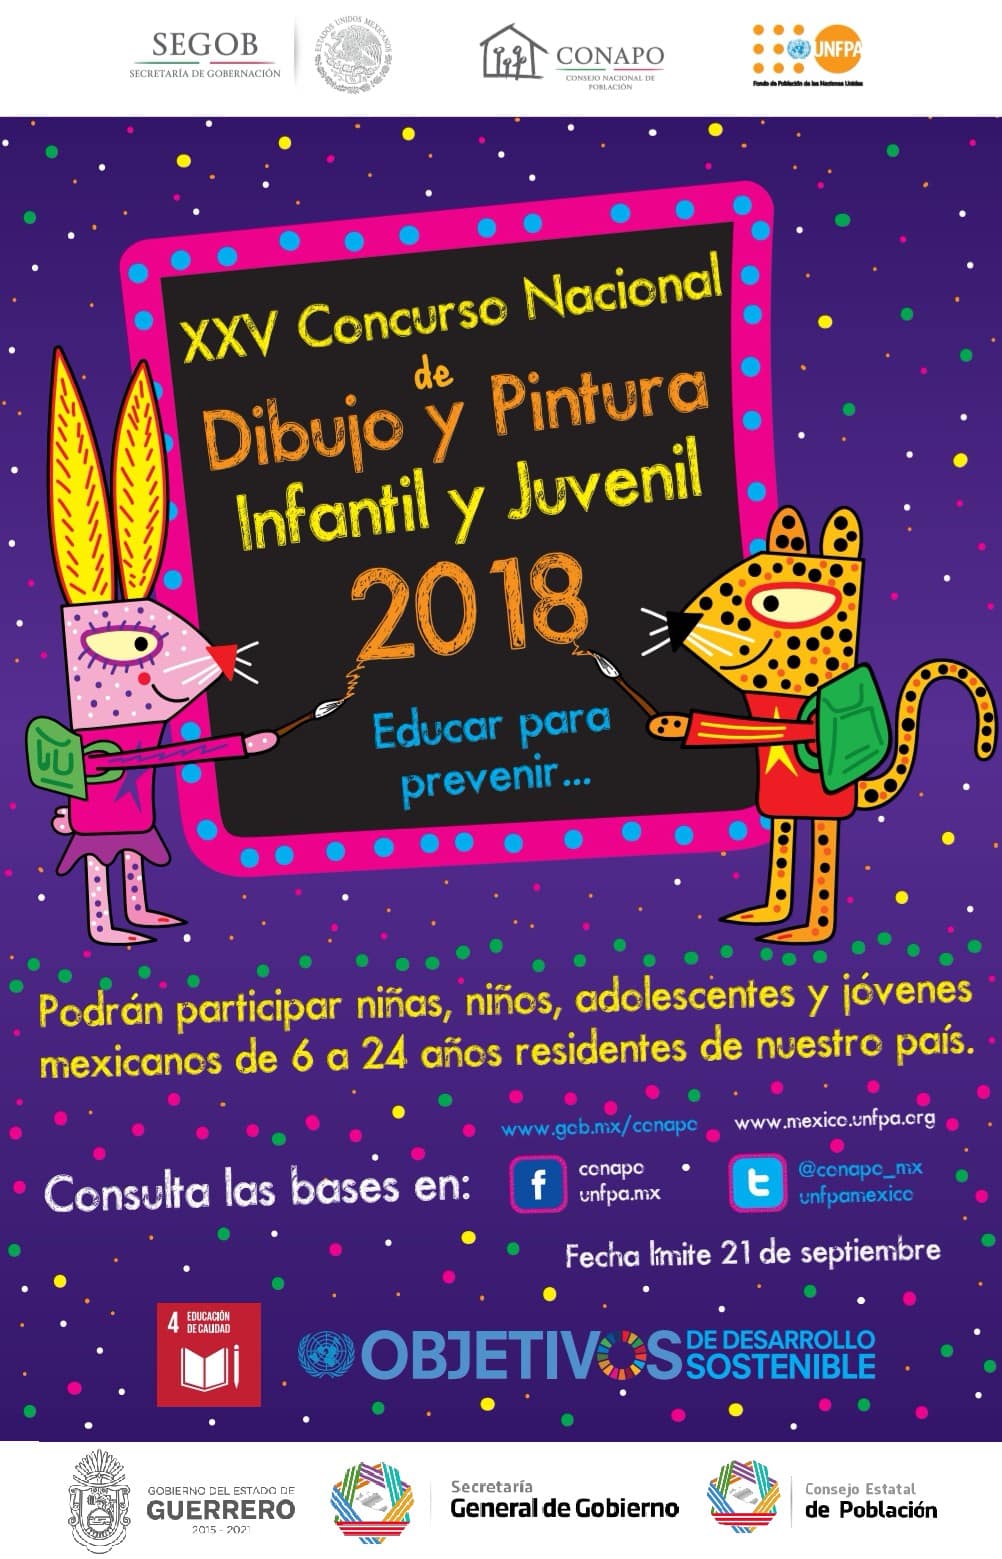 Participa en el XXV Concurso Nacional de Dibujo y Pintura Infantil y Juvenil 2018 “Educar para prevenir…”